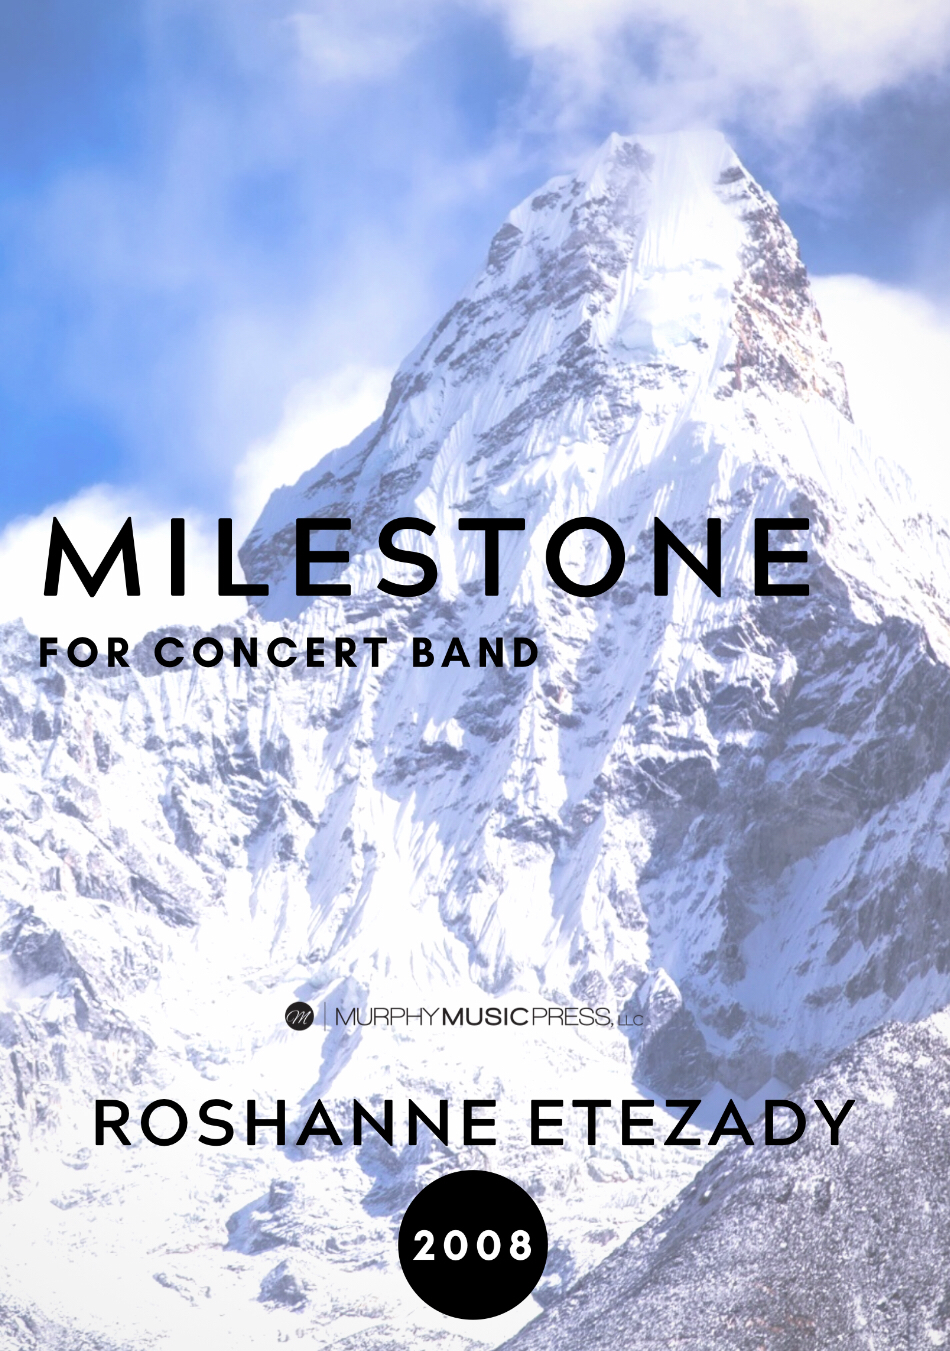 Milestone by Roshanne Etezady